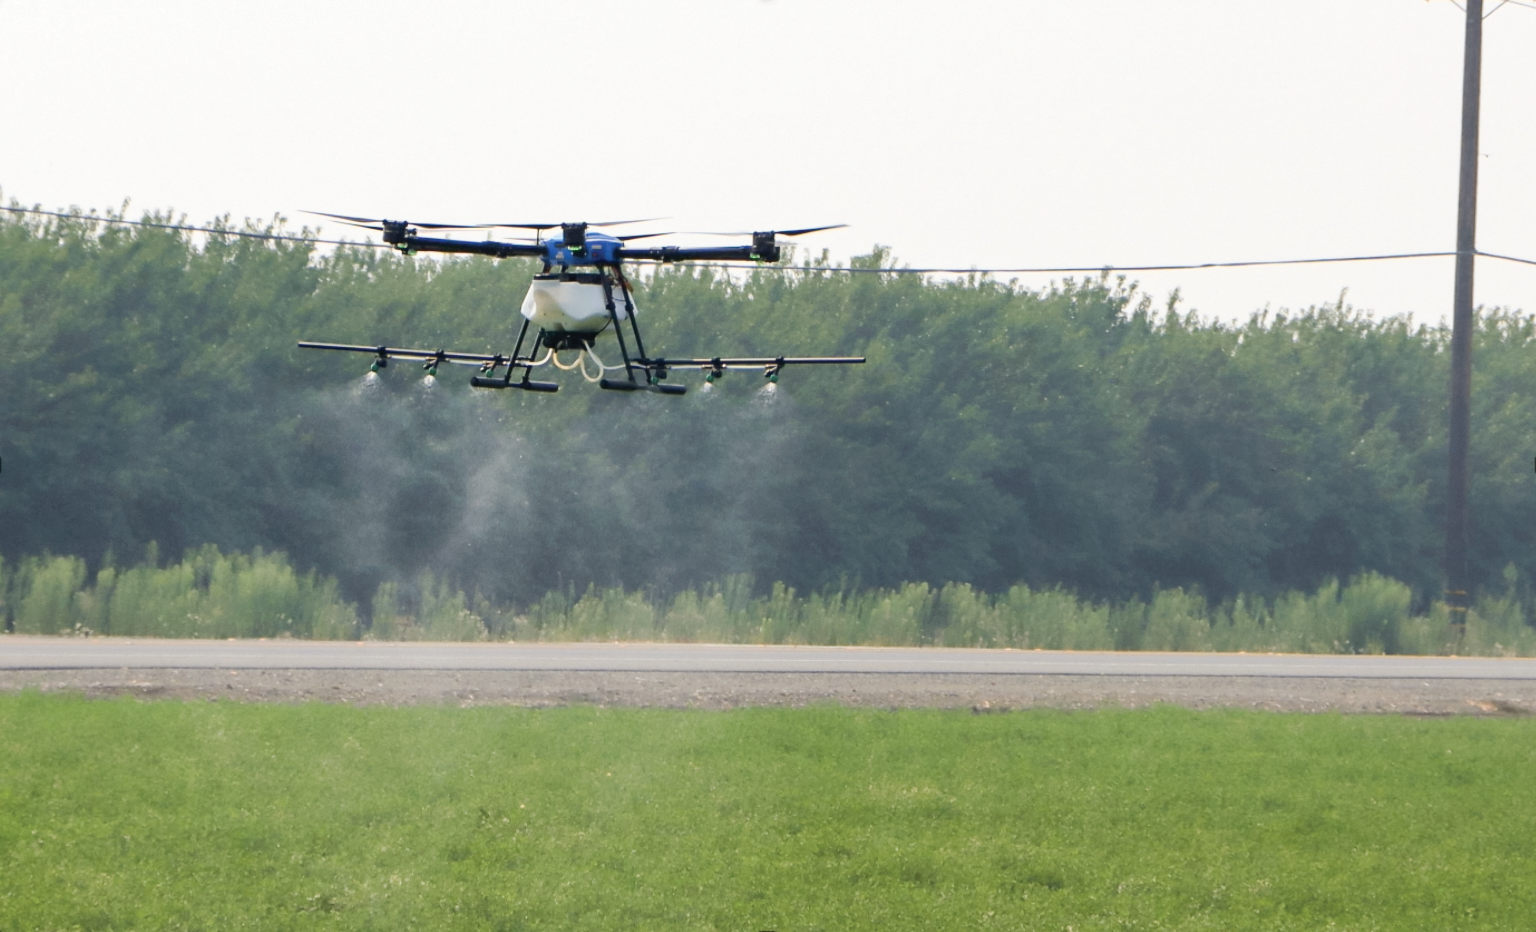 Studies tout precise pesticide applications, drones